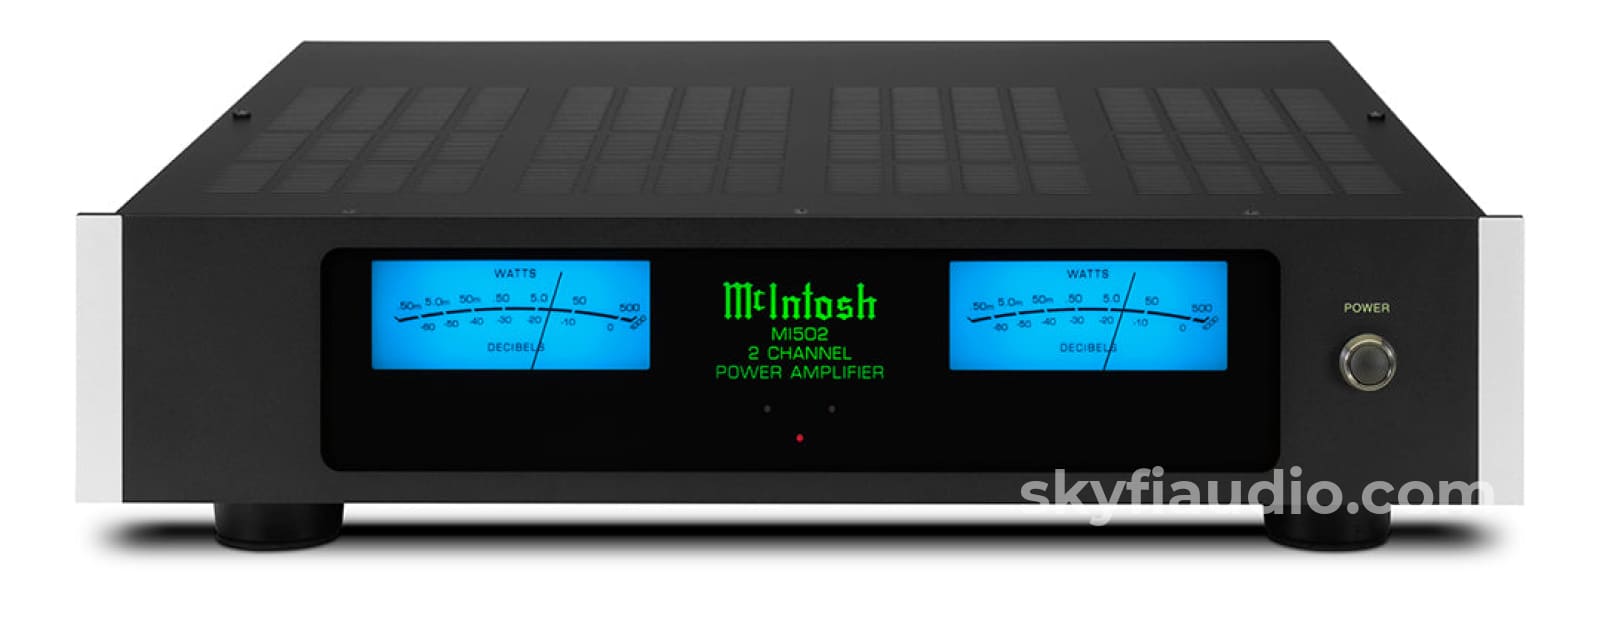 Mcintosh Mi502 Digital Amplifier